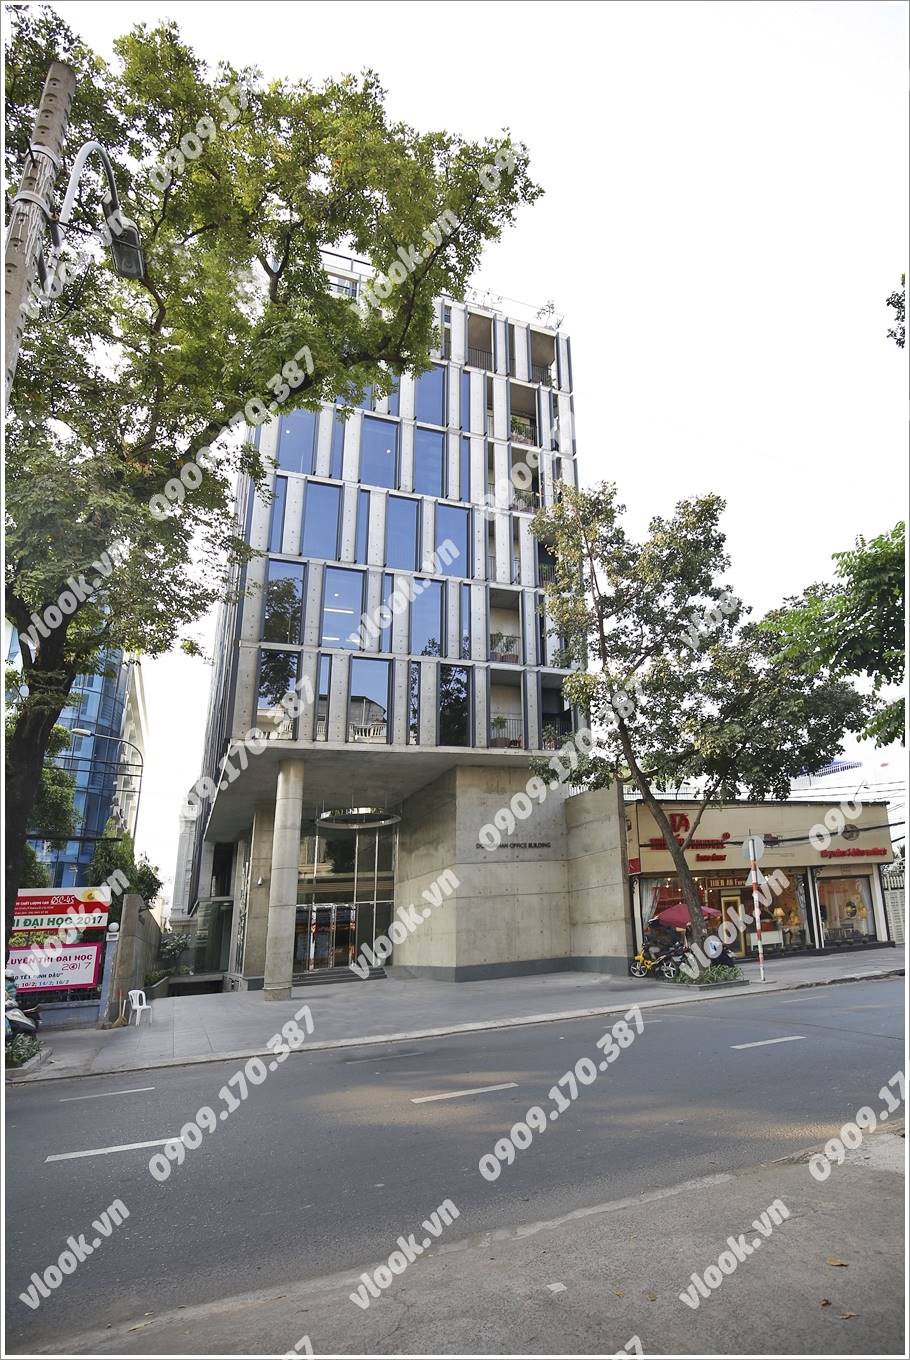 Cao ốc cho thuê văn phòng Dongnhan Office Building Nguyễn Đình Chiểu Phường Đa Kao Quận 1 - vlook.vn